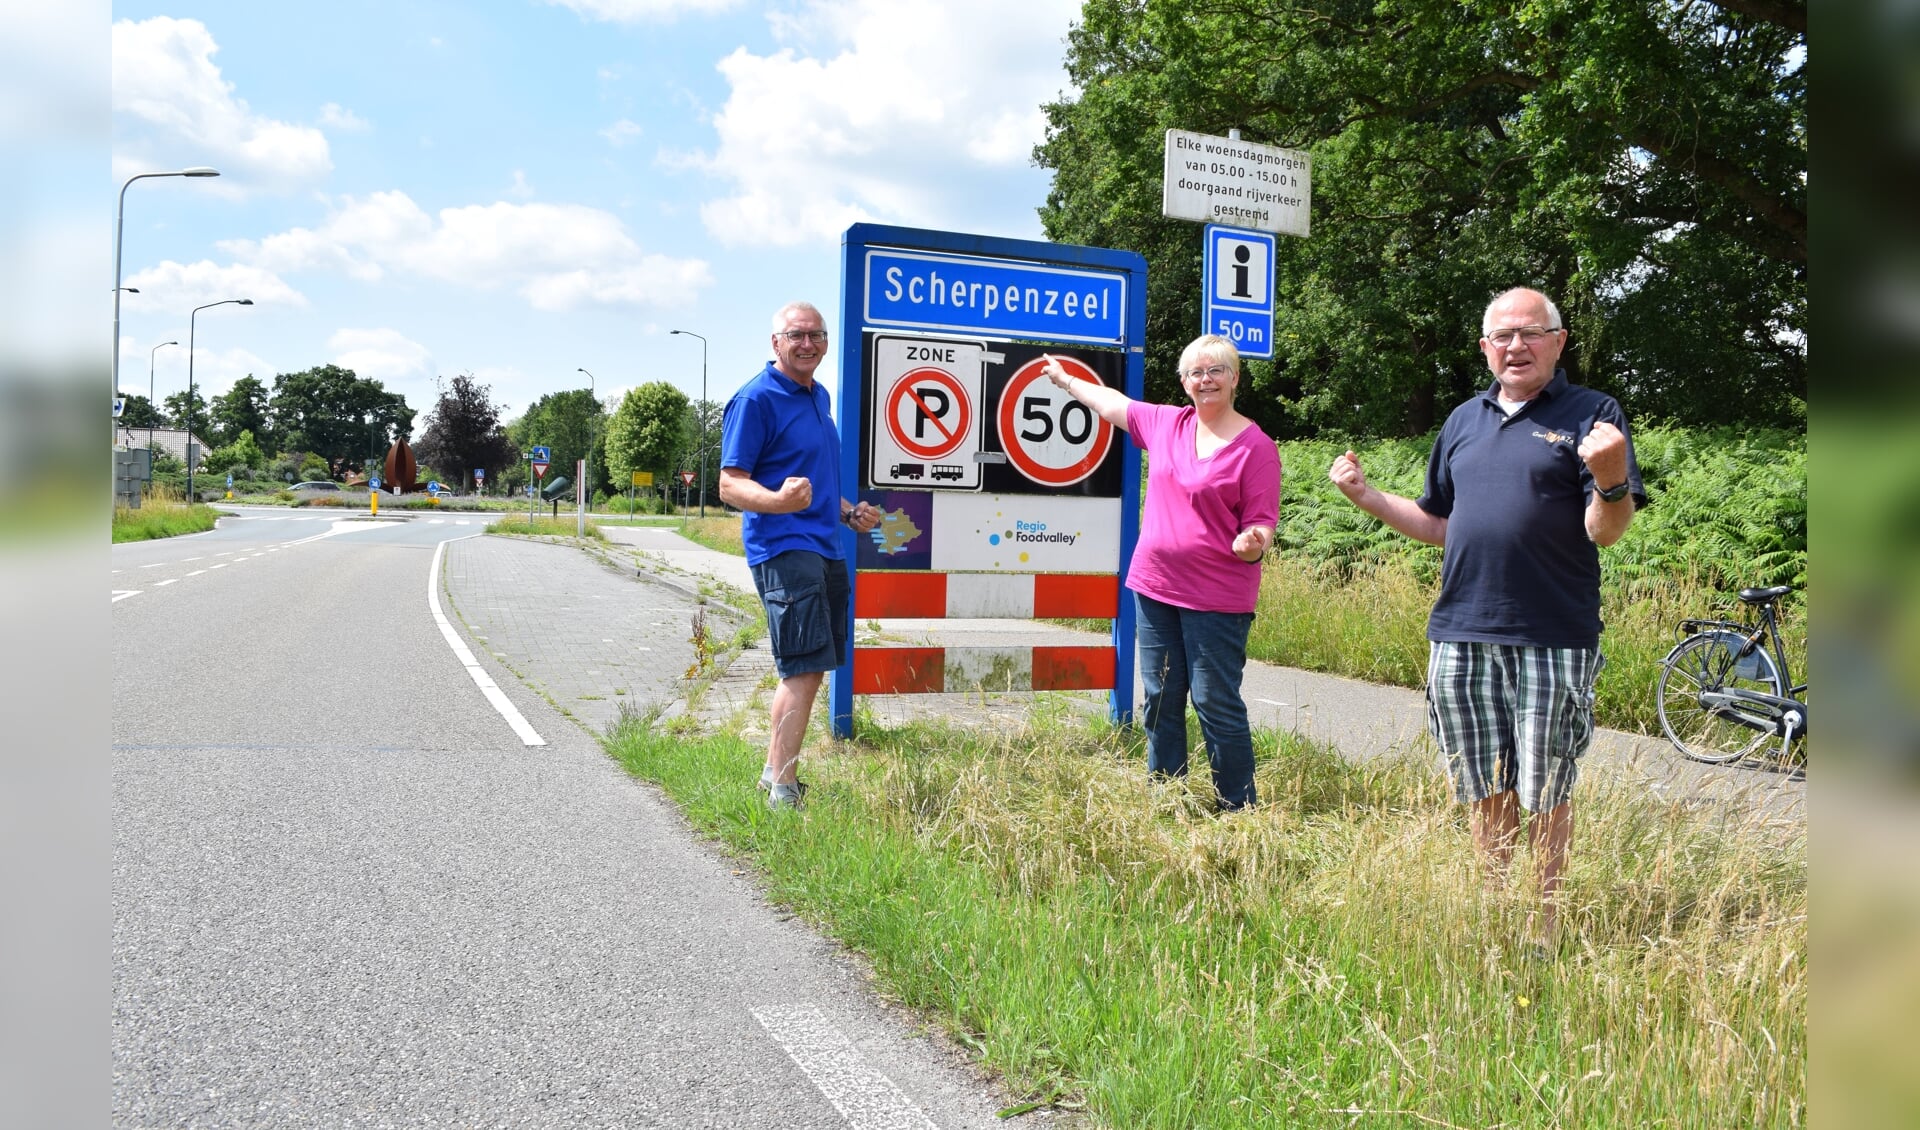 Van links naar rechts Jaap van Donselaar, Marianne Krens en Cees Vonk: ,,In het dorp horen we de verontwaardiging.